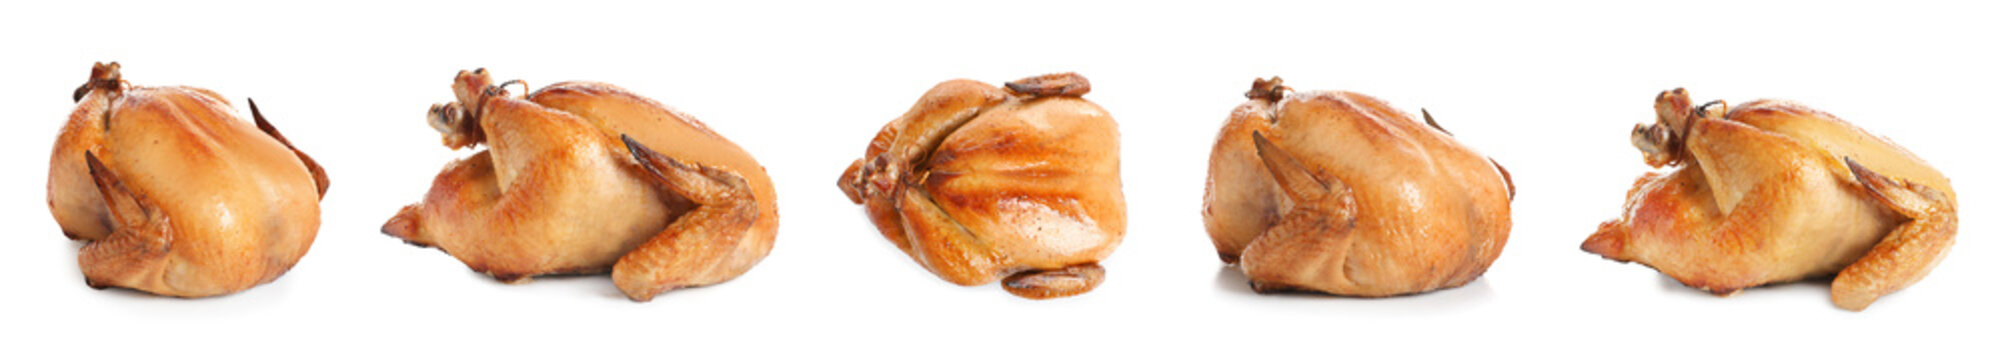 Set of delicious roasted turkey on white background